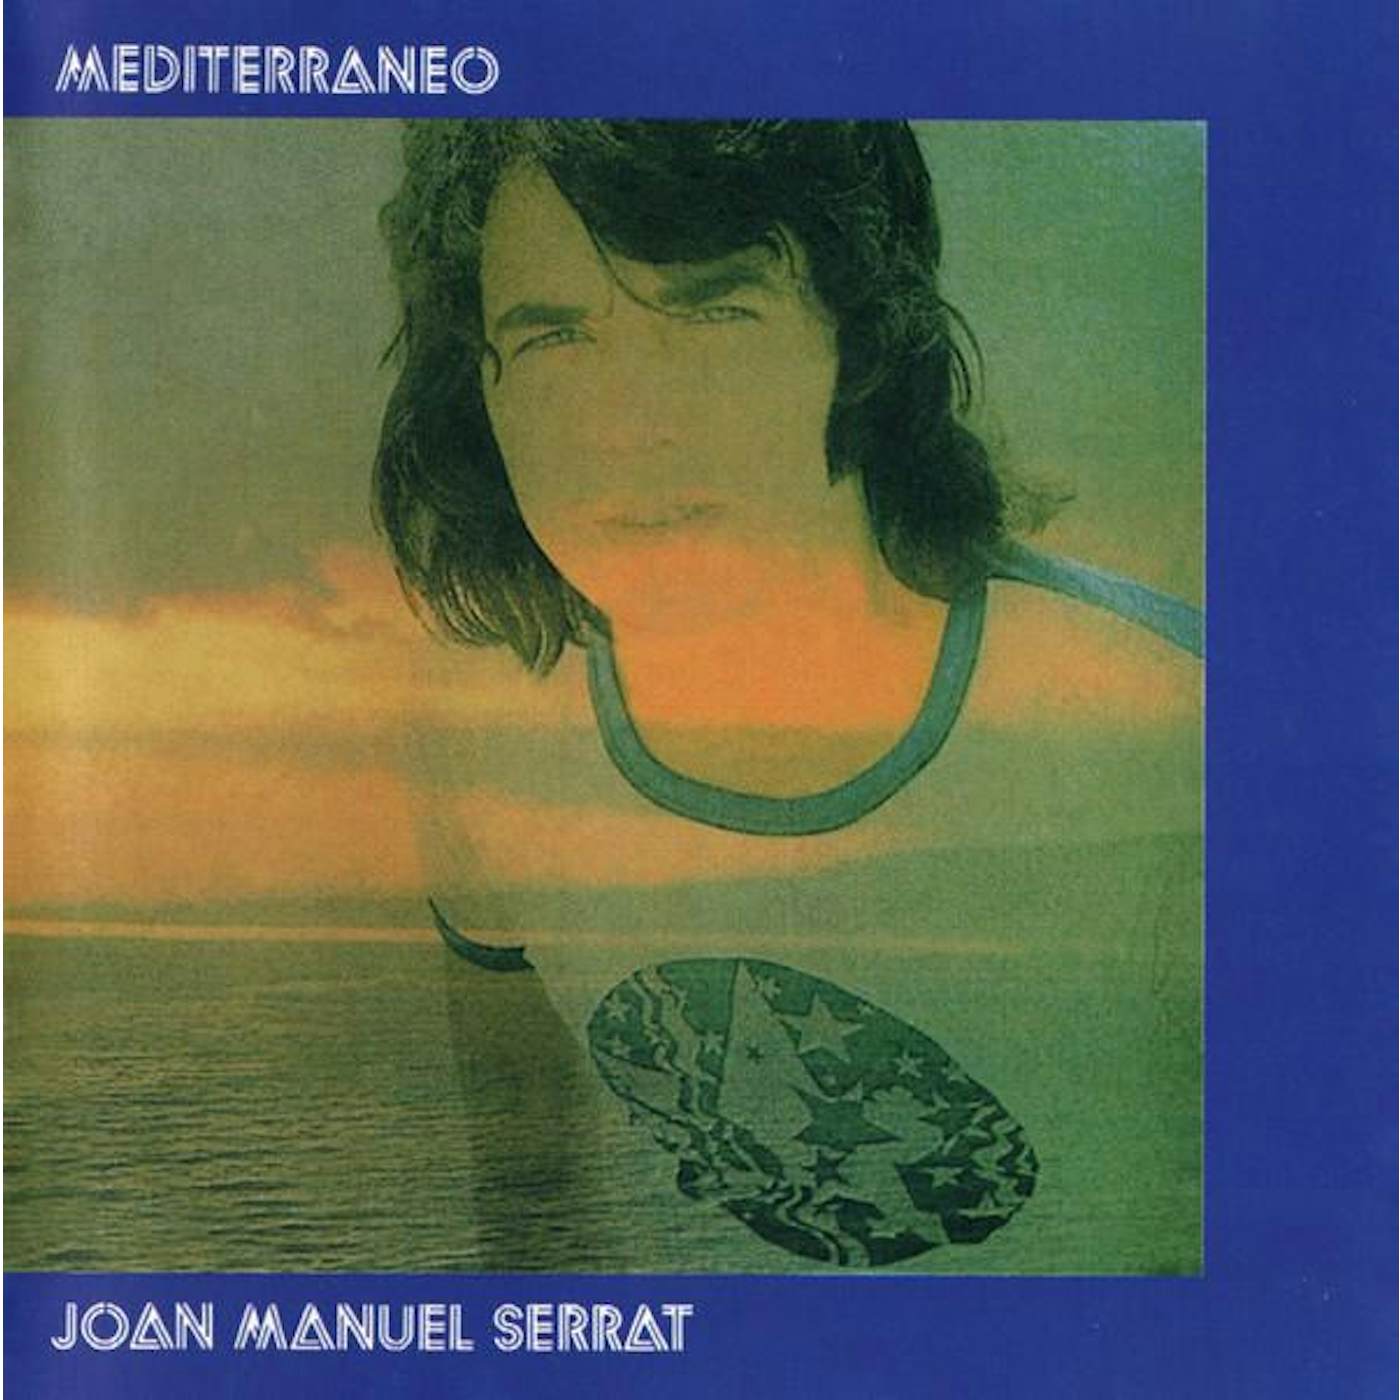 Joan Manuel Serrat MEDITERRANEO CD